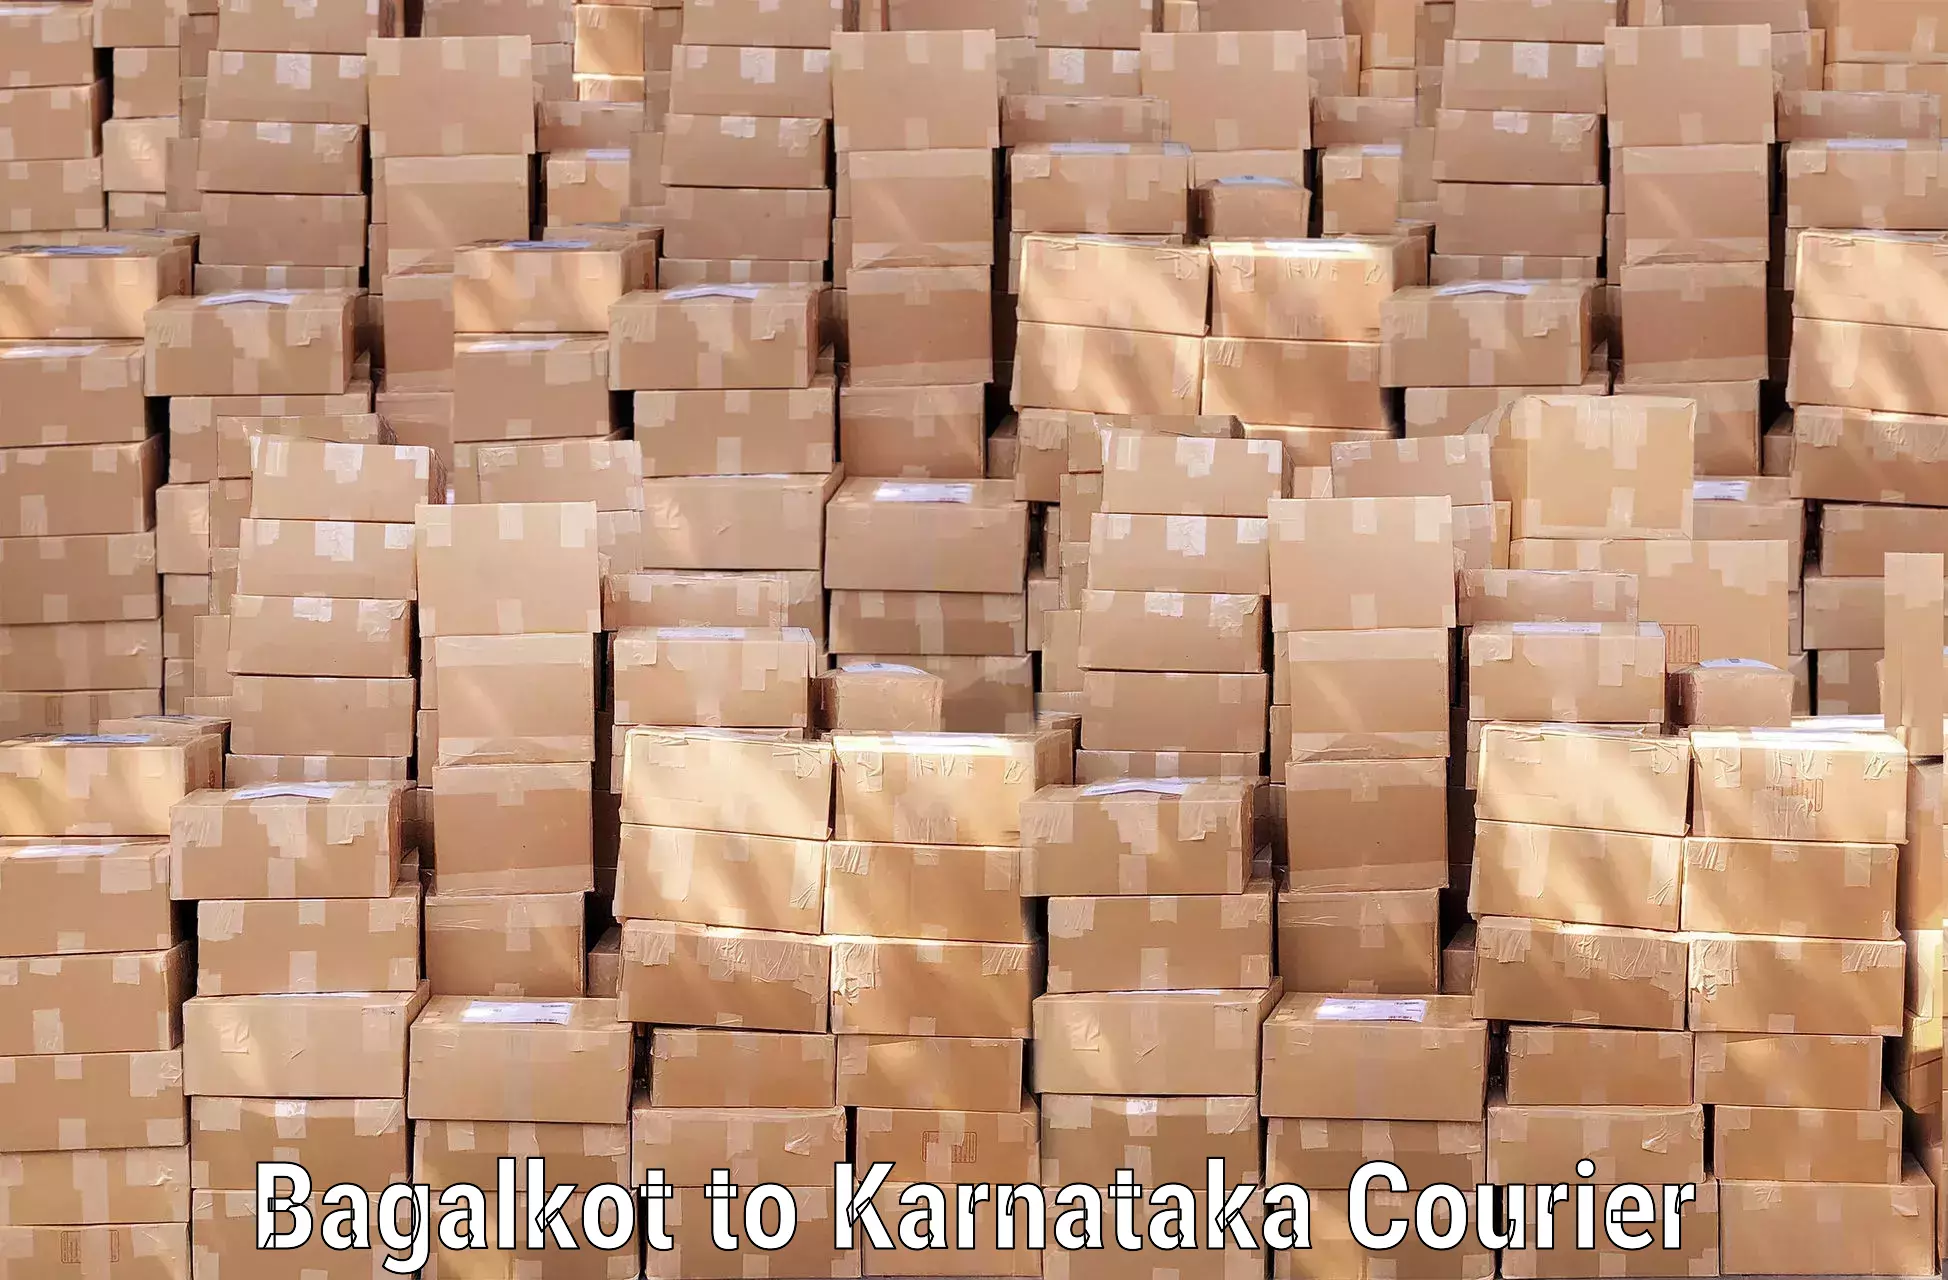 Long distance luggage transport in Bagalkot to Karnataka